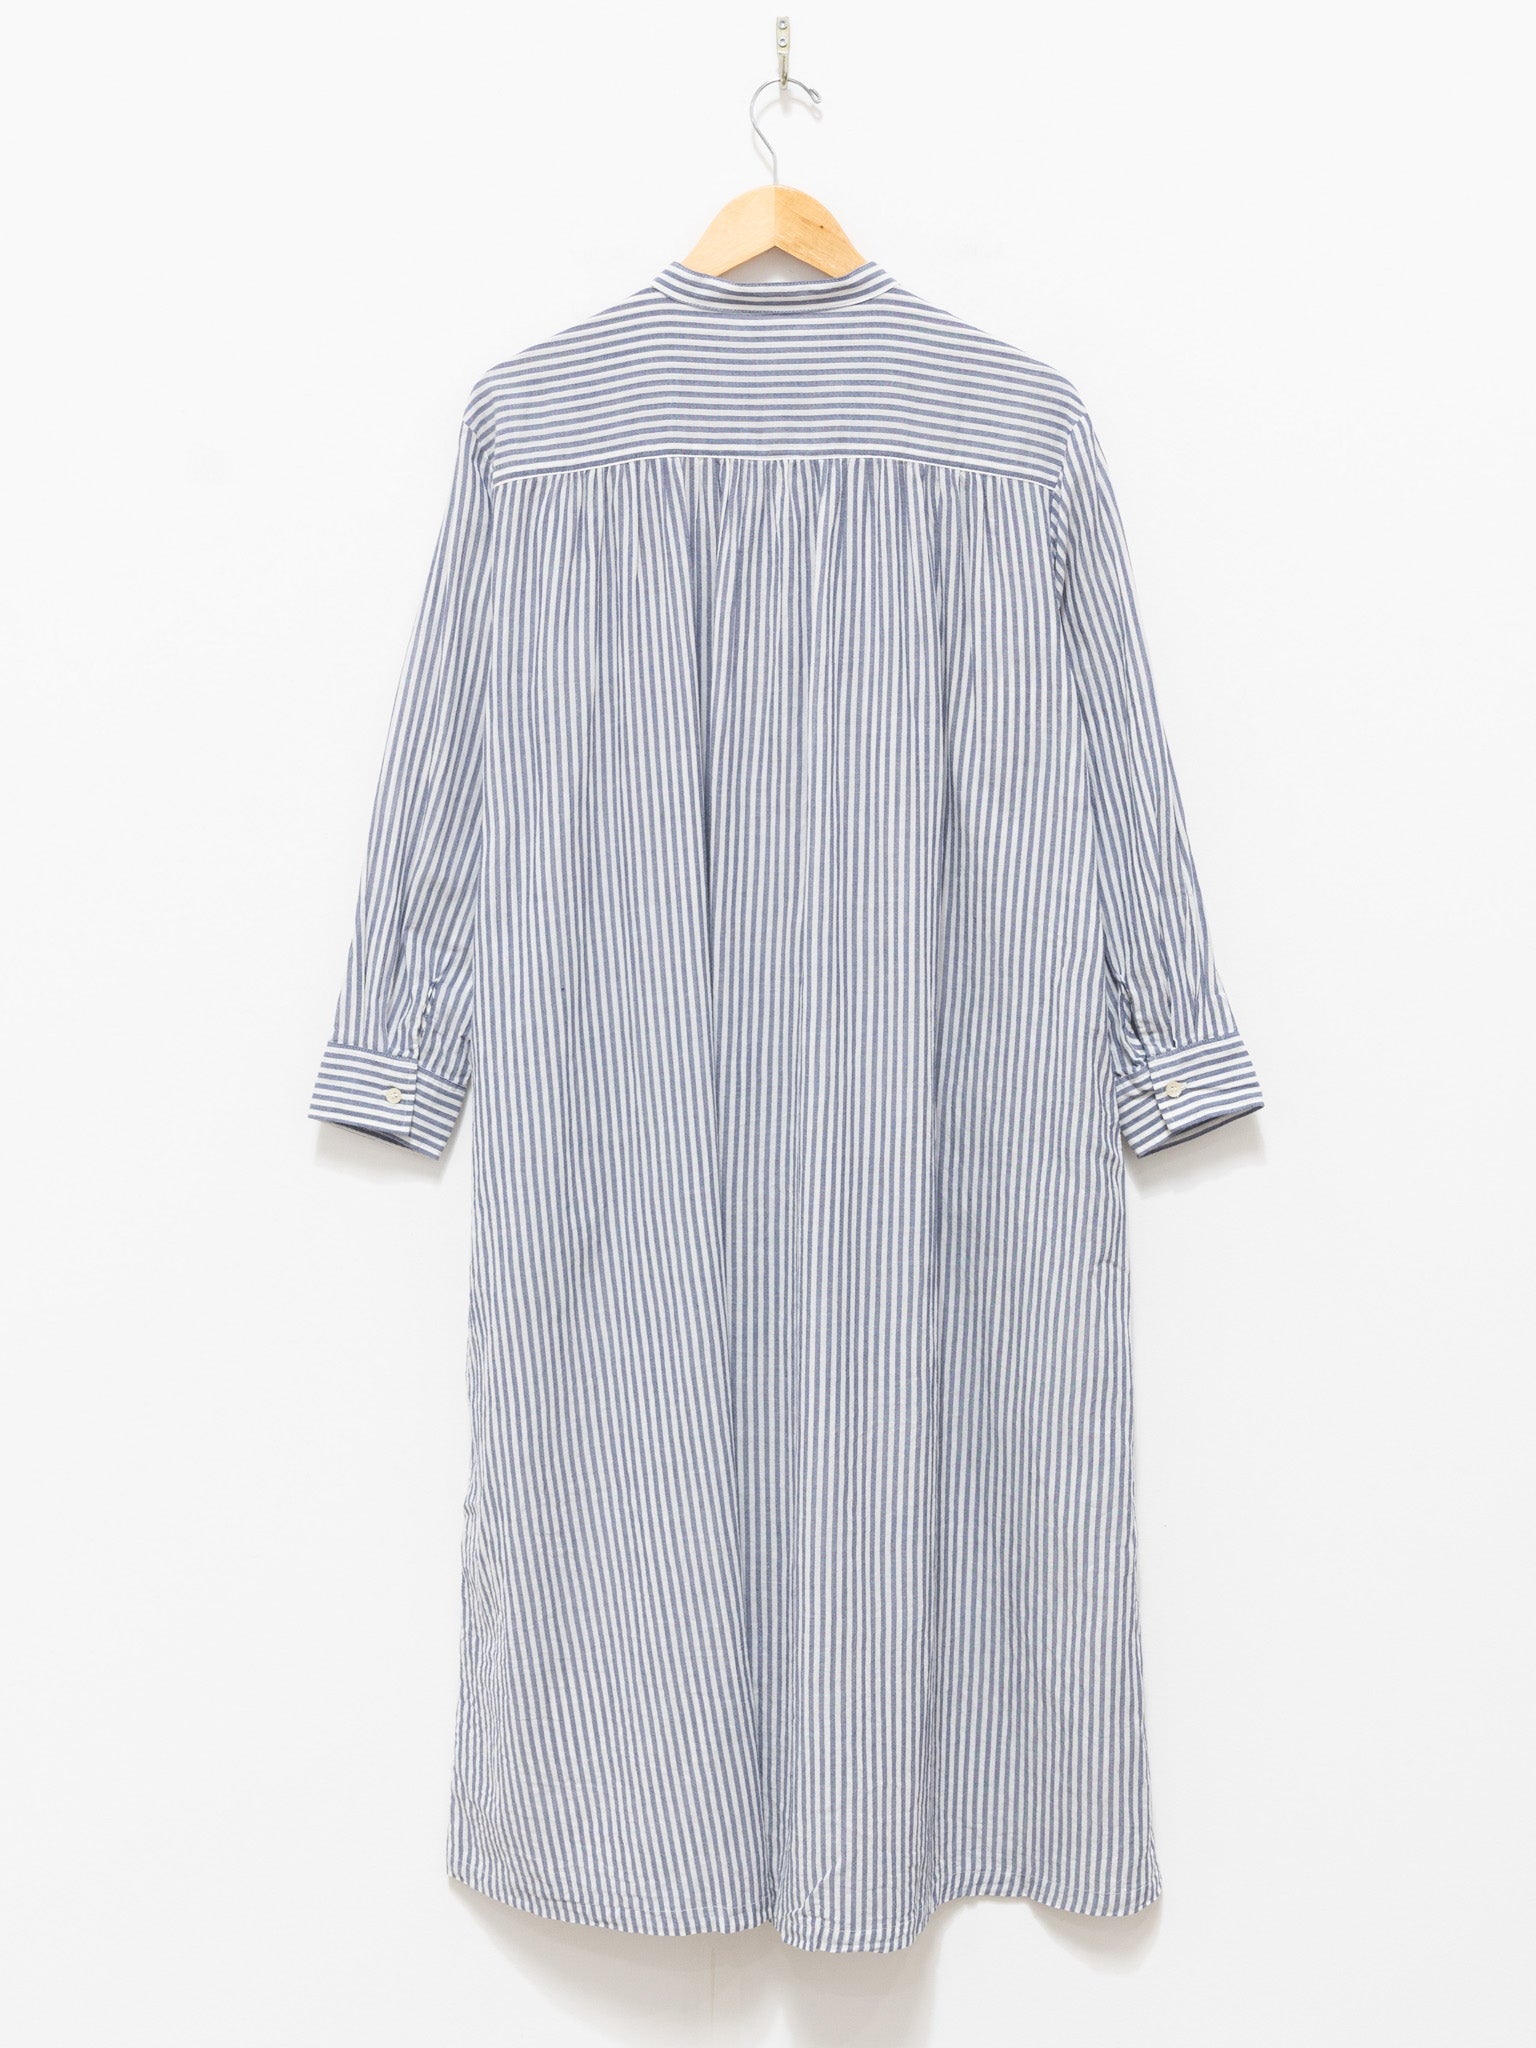 Namu Shop - ICHI Striped Band Collar Dress